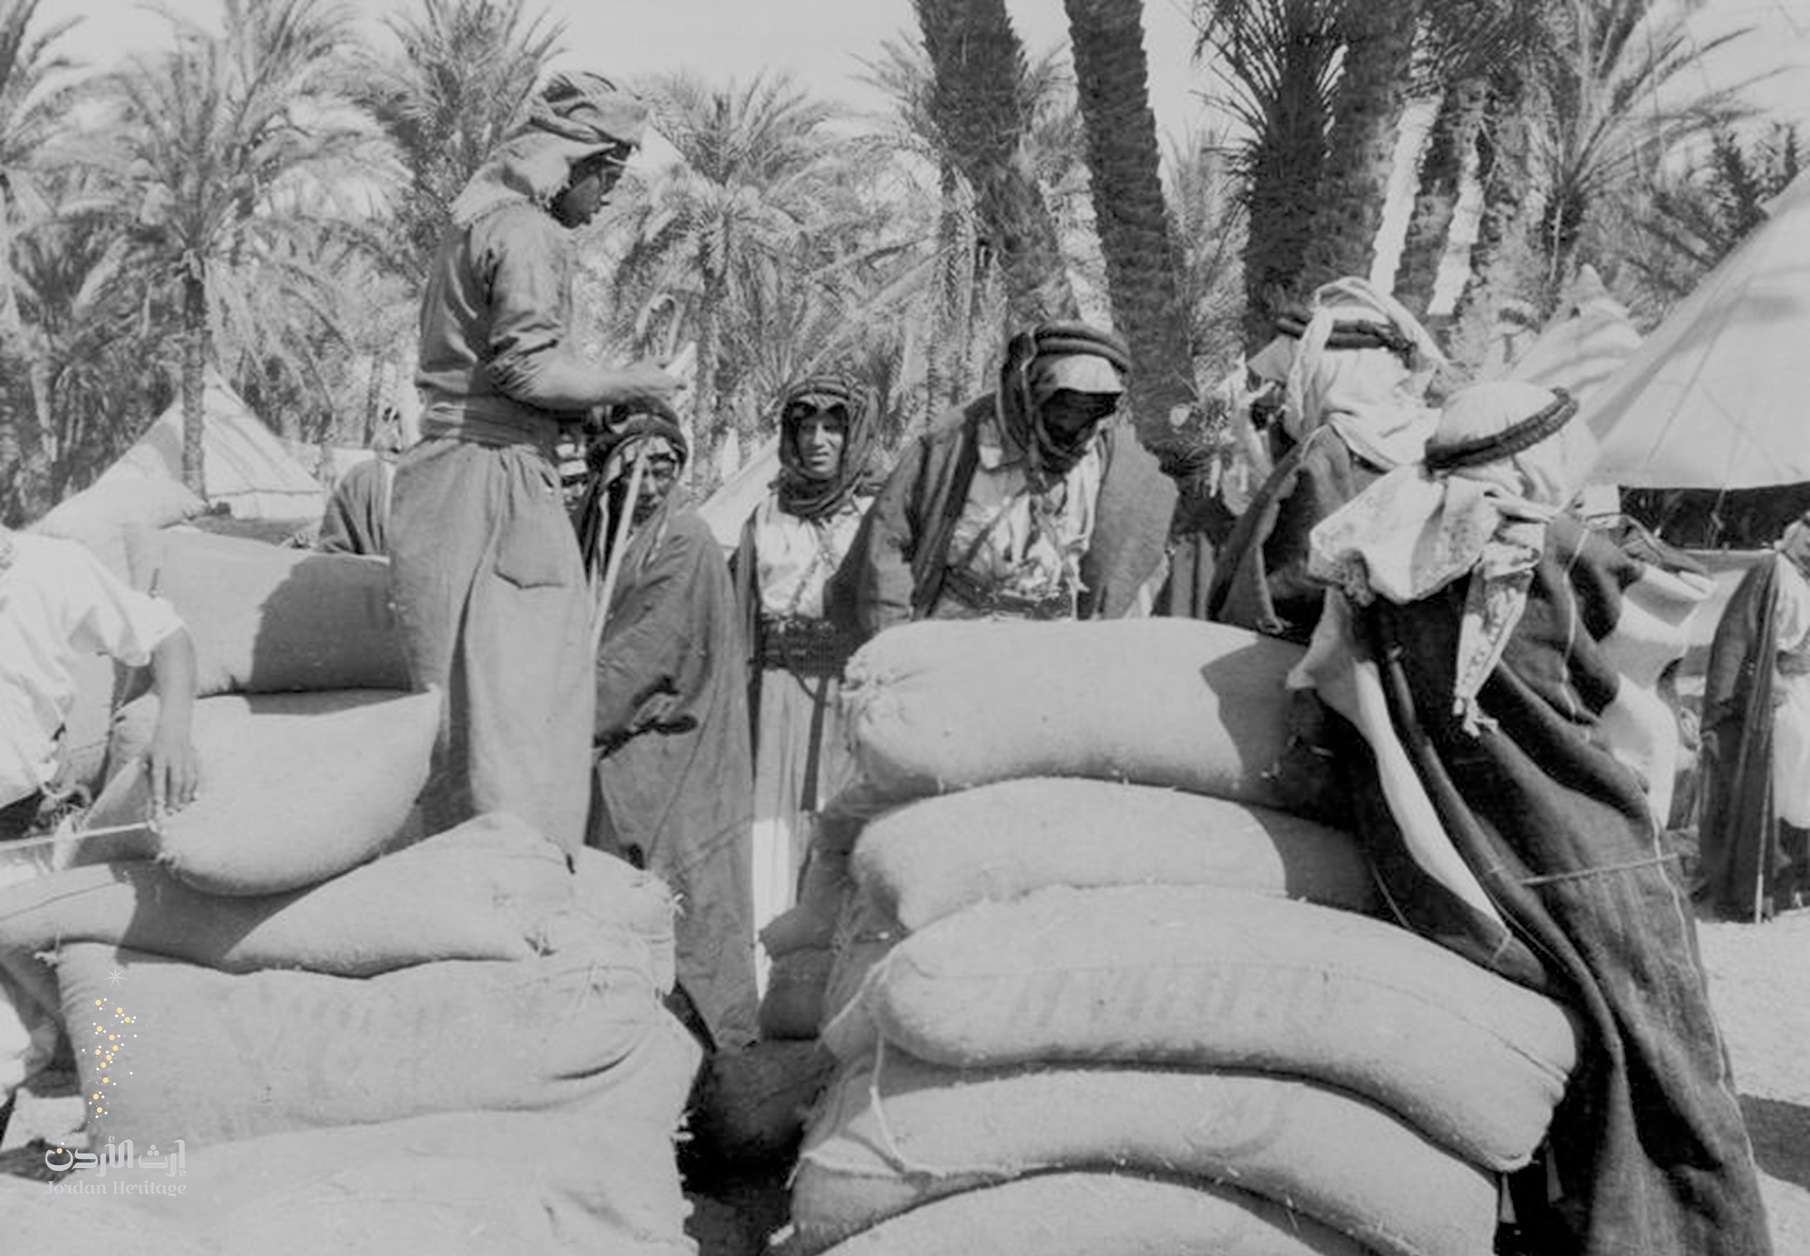 مجموعة من رجال قبيلة بني عطية يقومون بتحميل المؤن لقوات الثورة في العقبة استعدادا لنقلها لمعسكر القويرة